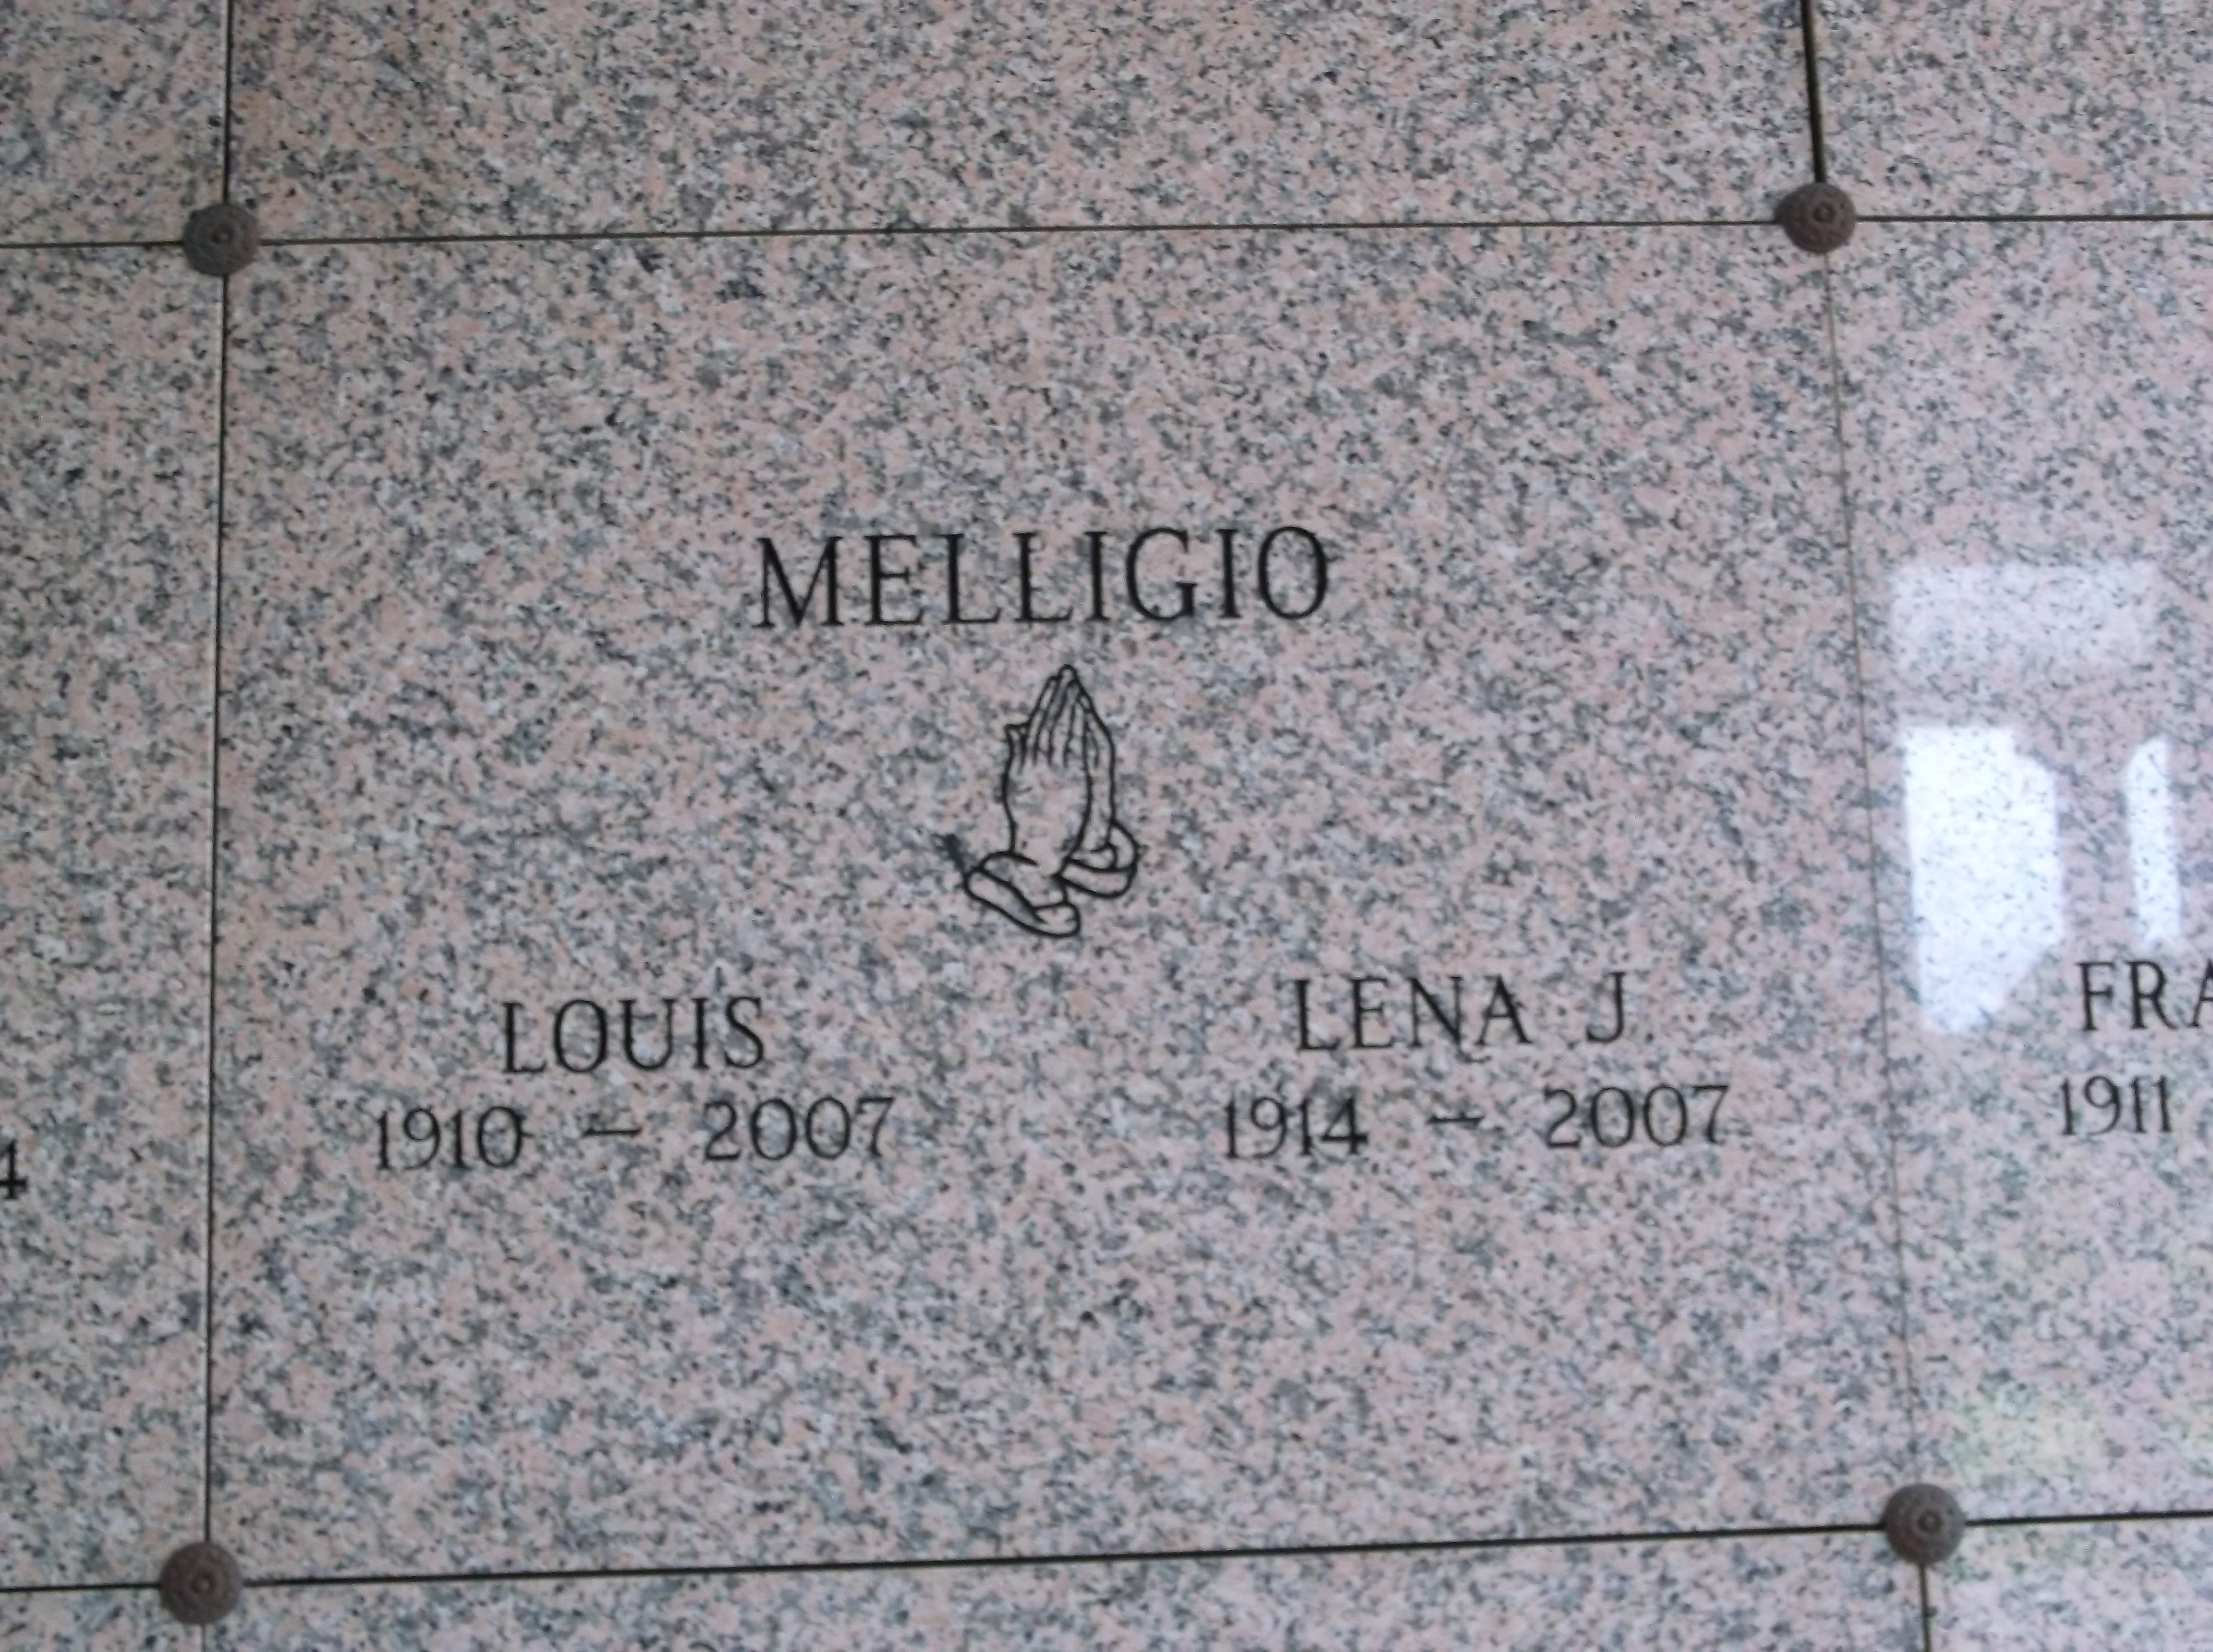 Lena J Melligio